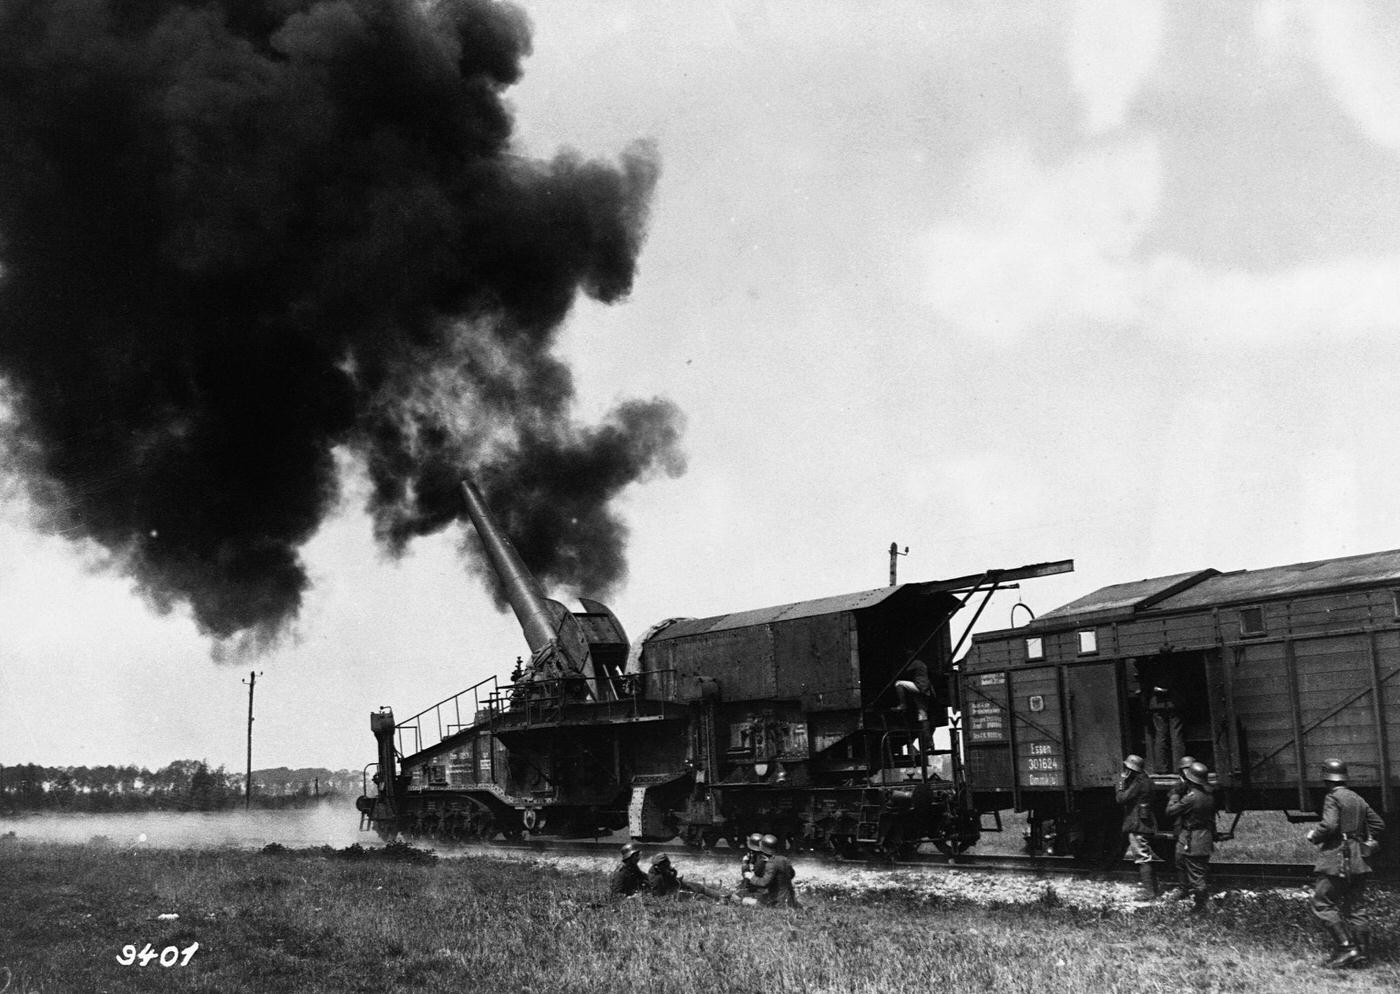 Large German artillery gun mounted on a railroad car firing a shell.